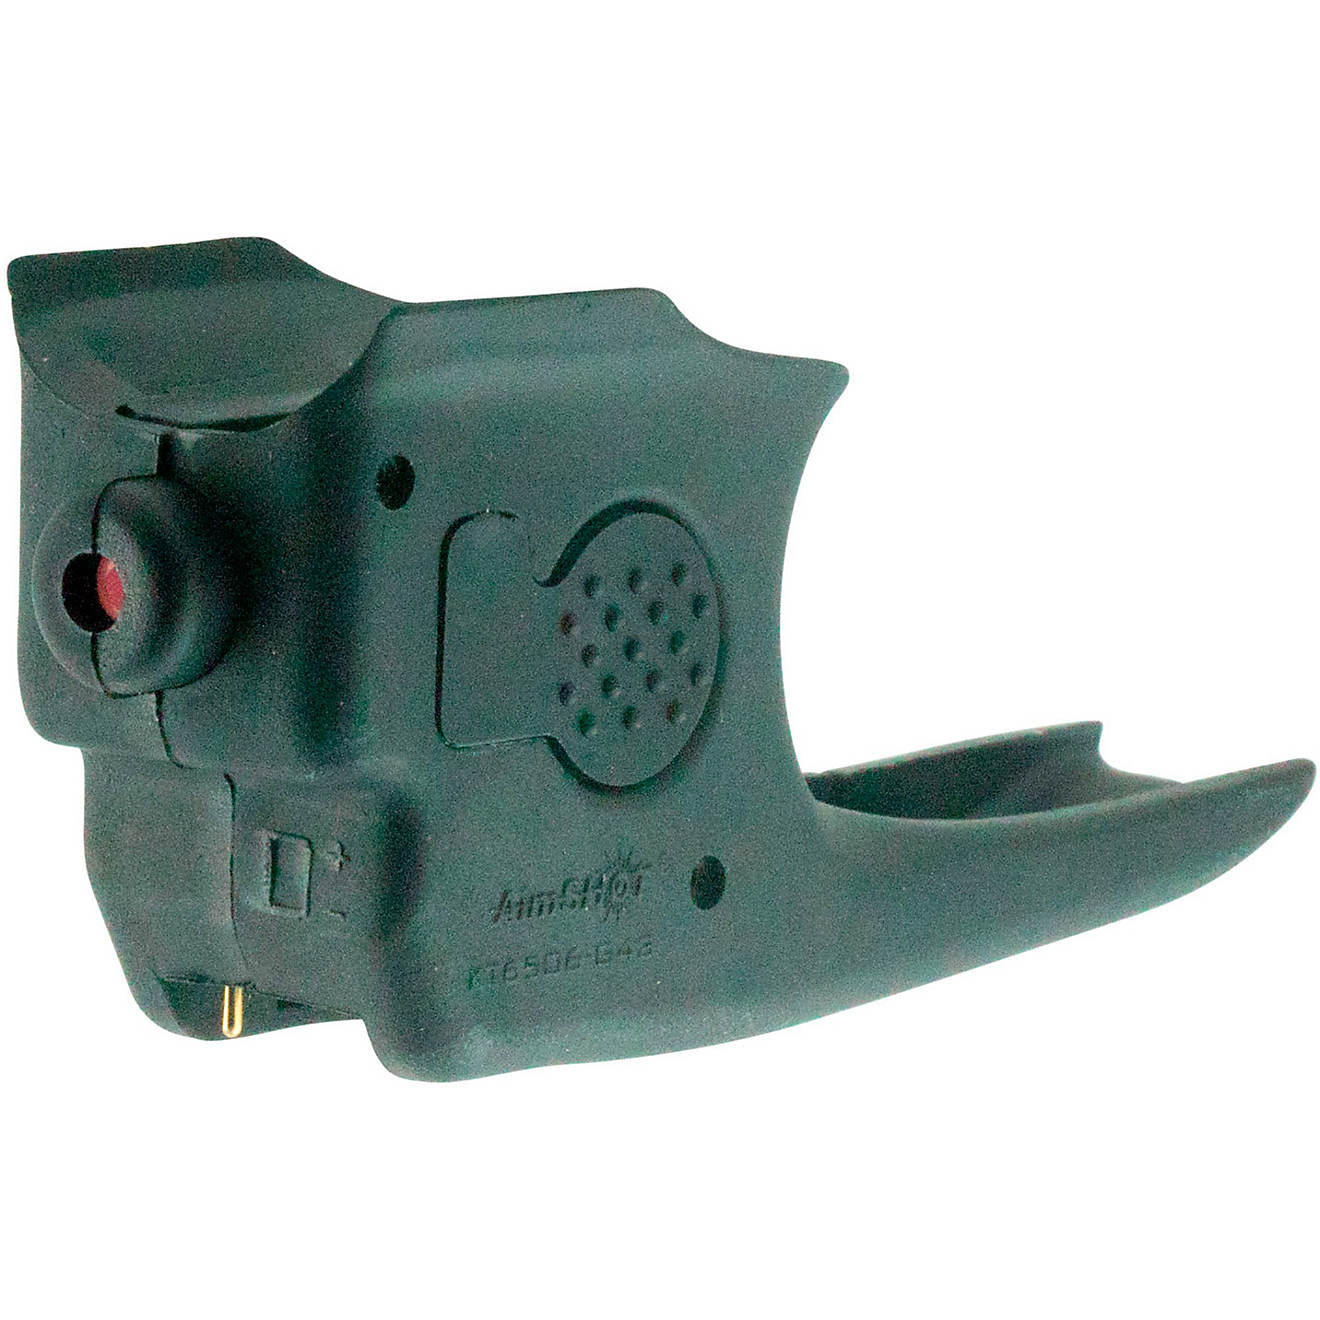 AimSHOT KT 6506-G43 Trigger Guard Mounted Laser                                                                                  - view number 1